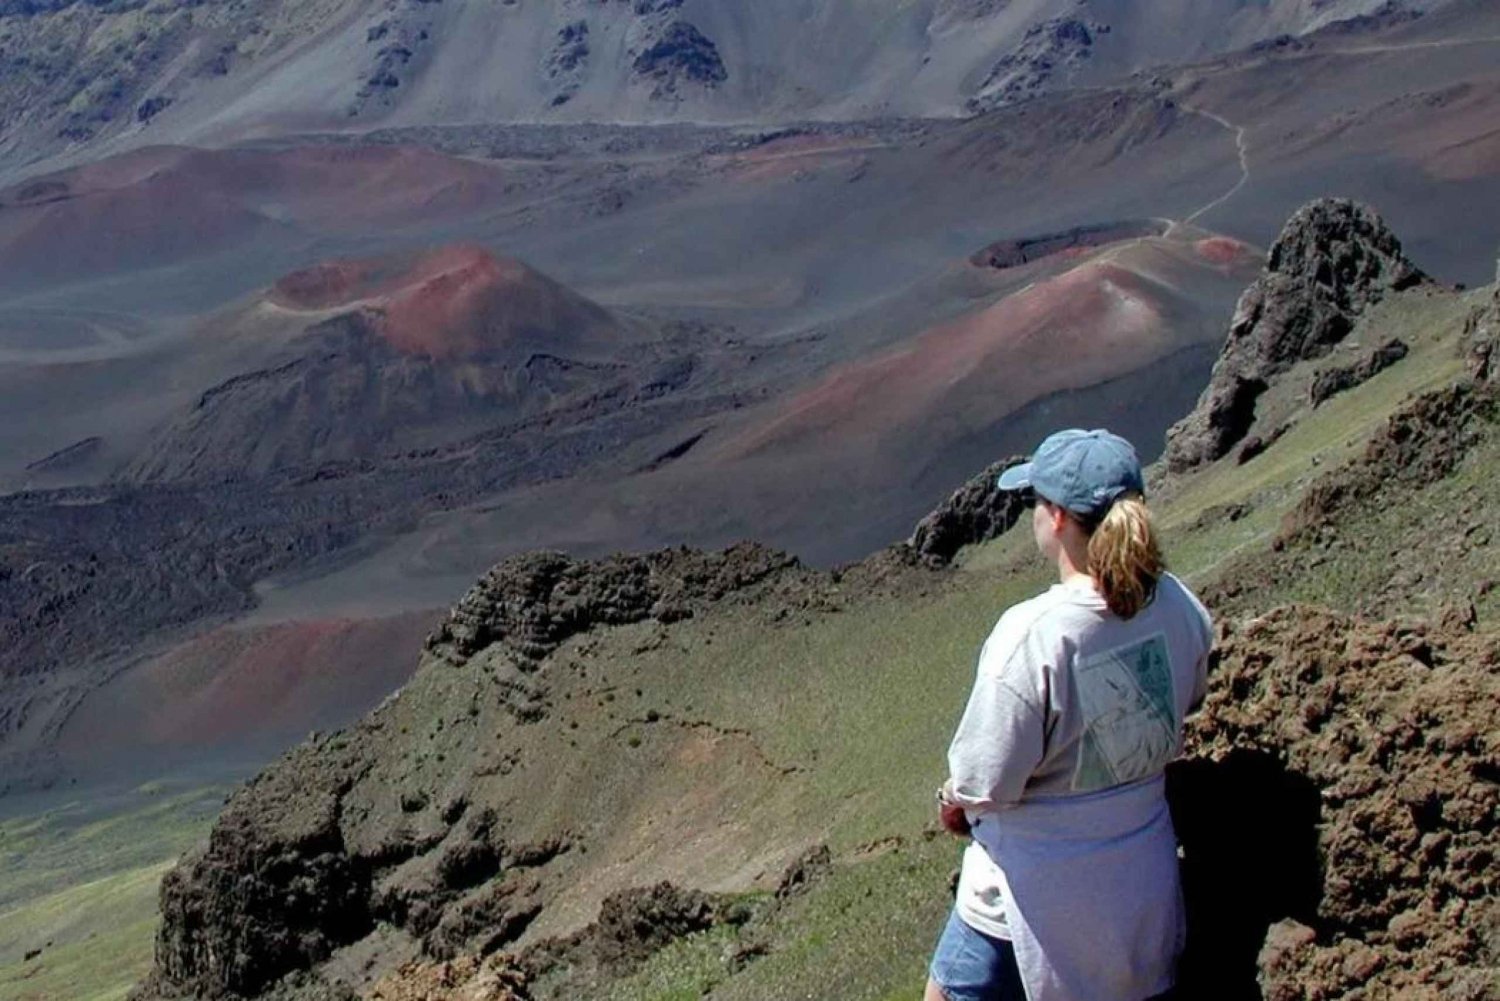 Maui: Excursión guiada al cráter de Haleakala con almuerzo